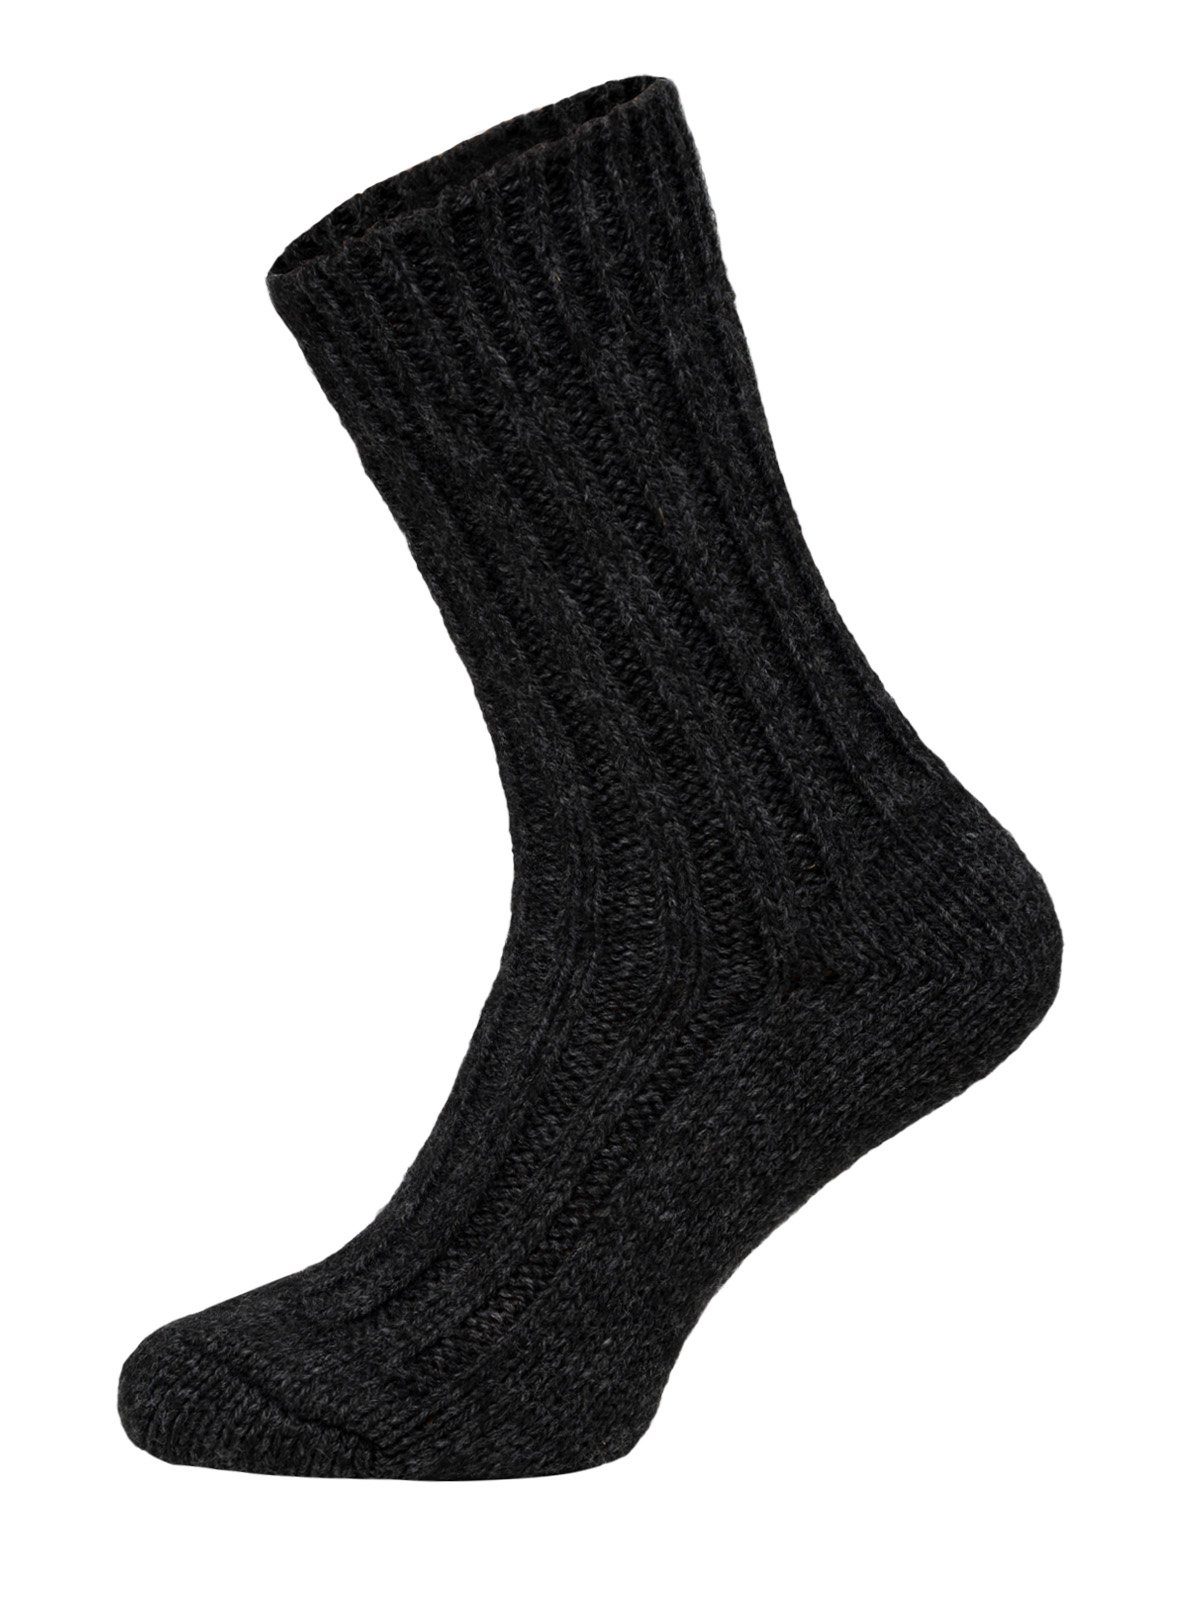 HomeOfSocks Socken Wollsocken mit Alpakawolle Strapazierfähige und warme Wollsocken mit 50% Wollanteil und Alpakawolle 2xAnthrazit